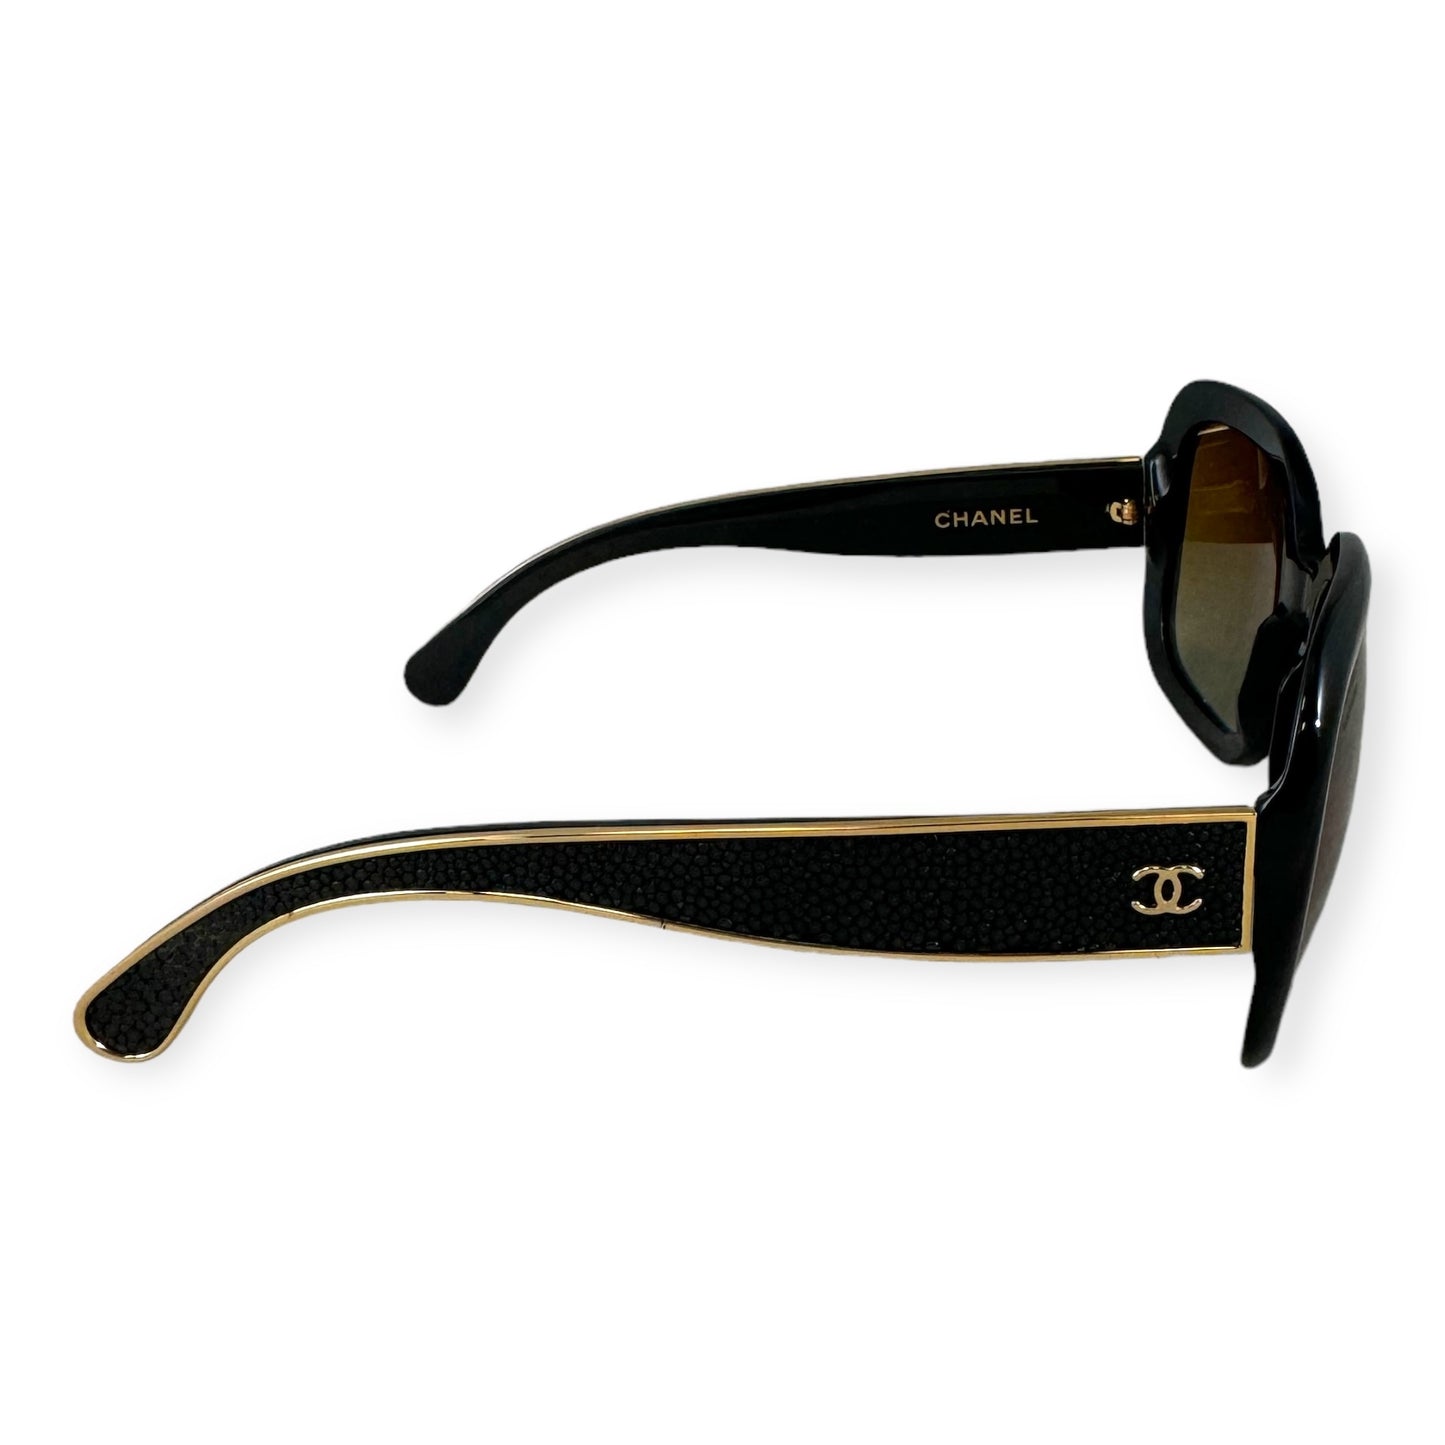 CHANEL Stingray Sunglasses in Black